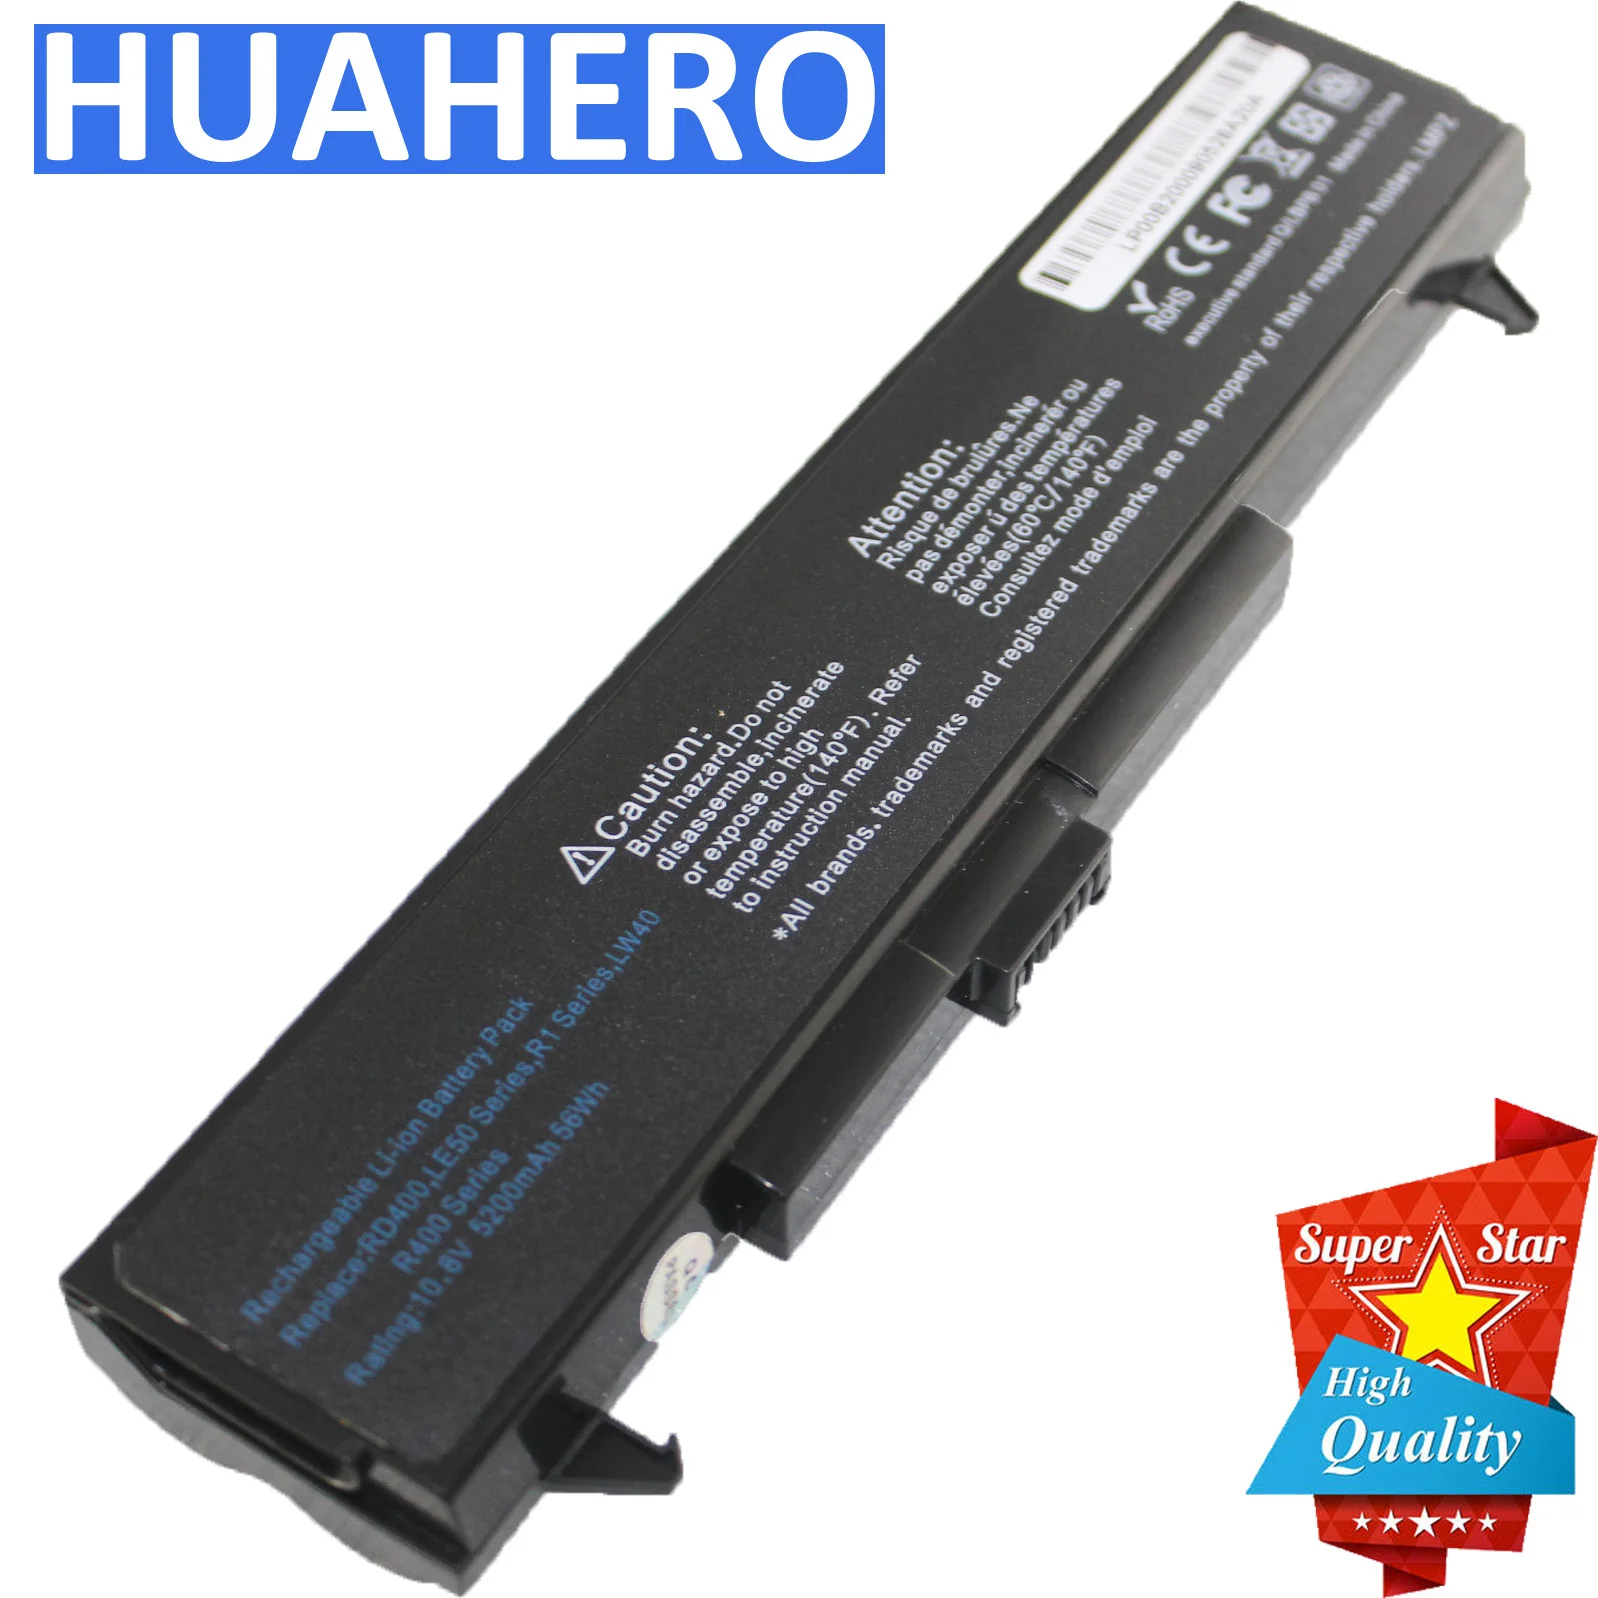 Baterija za HP compaq B2000 LAPTOP LG LM40 LM50 LM60 R405 R400 R1 S1 V1 T1 RD400 R405 LW40 LW65 LW75 LS LB32111B LB52113B Serije